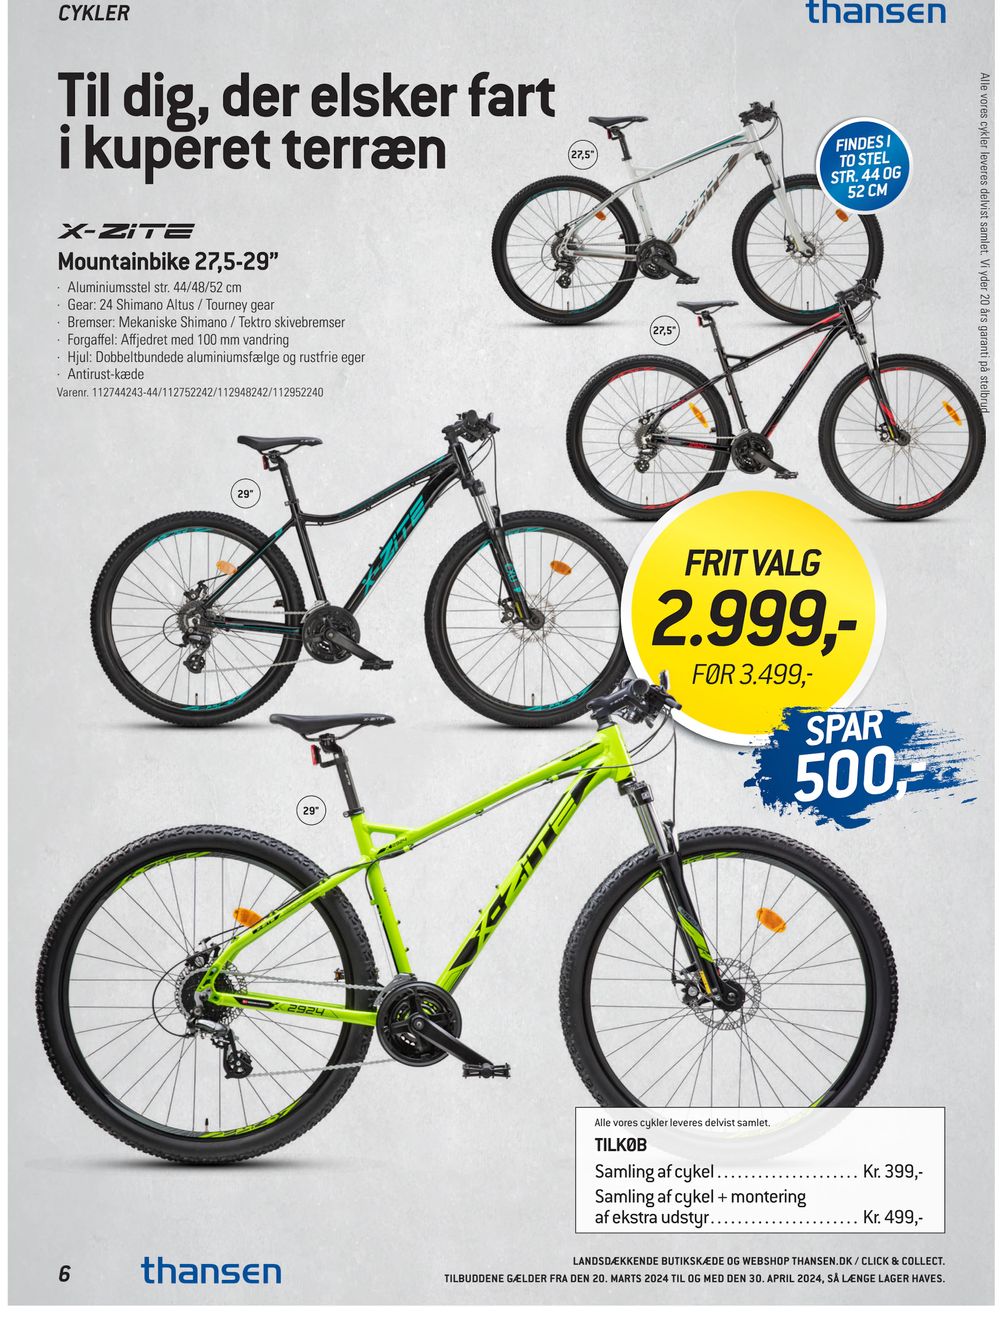 Tilbud på Mountainbike 27,5-29” fra thansen til 2.999 kr.